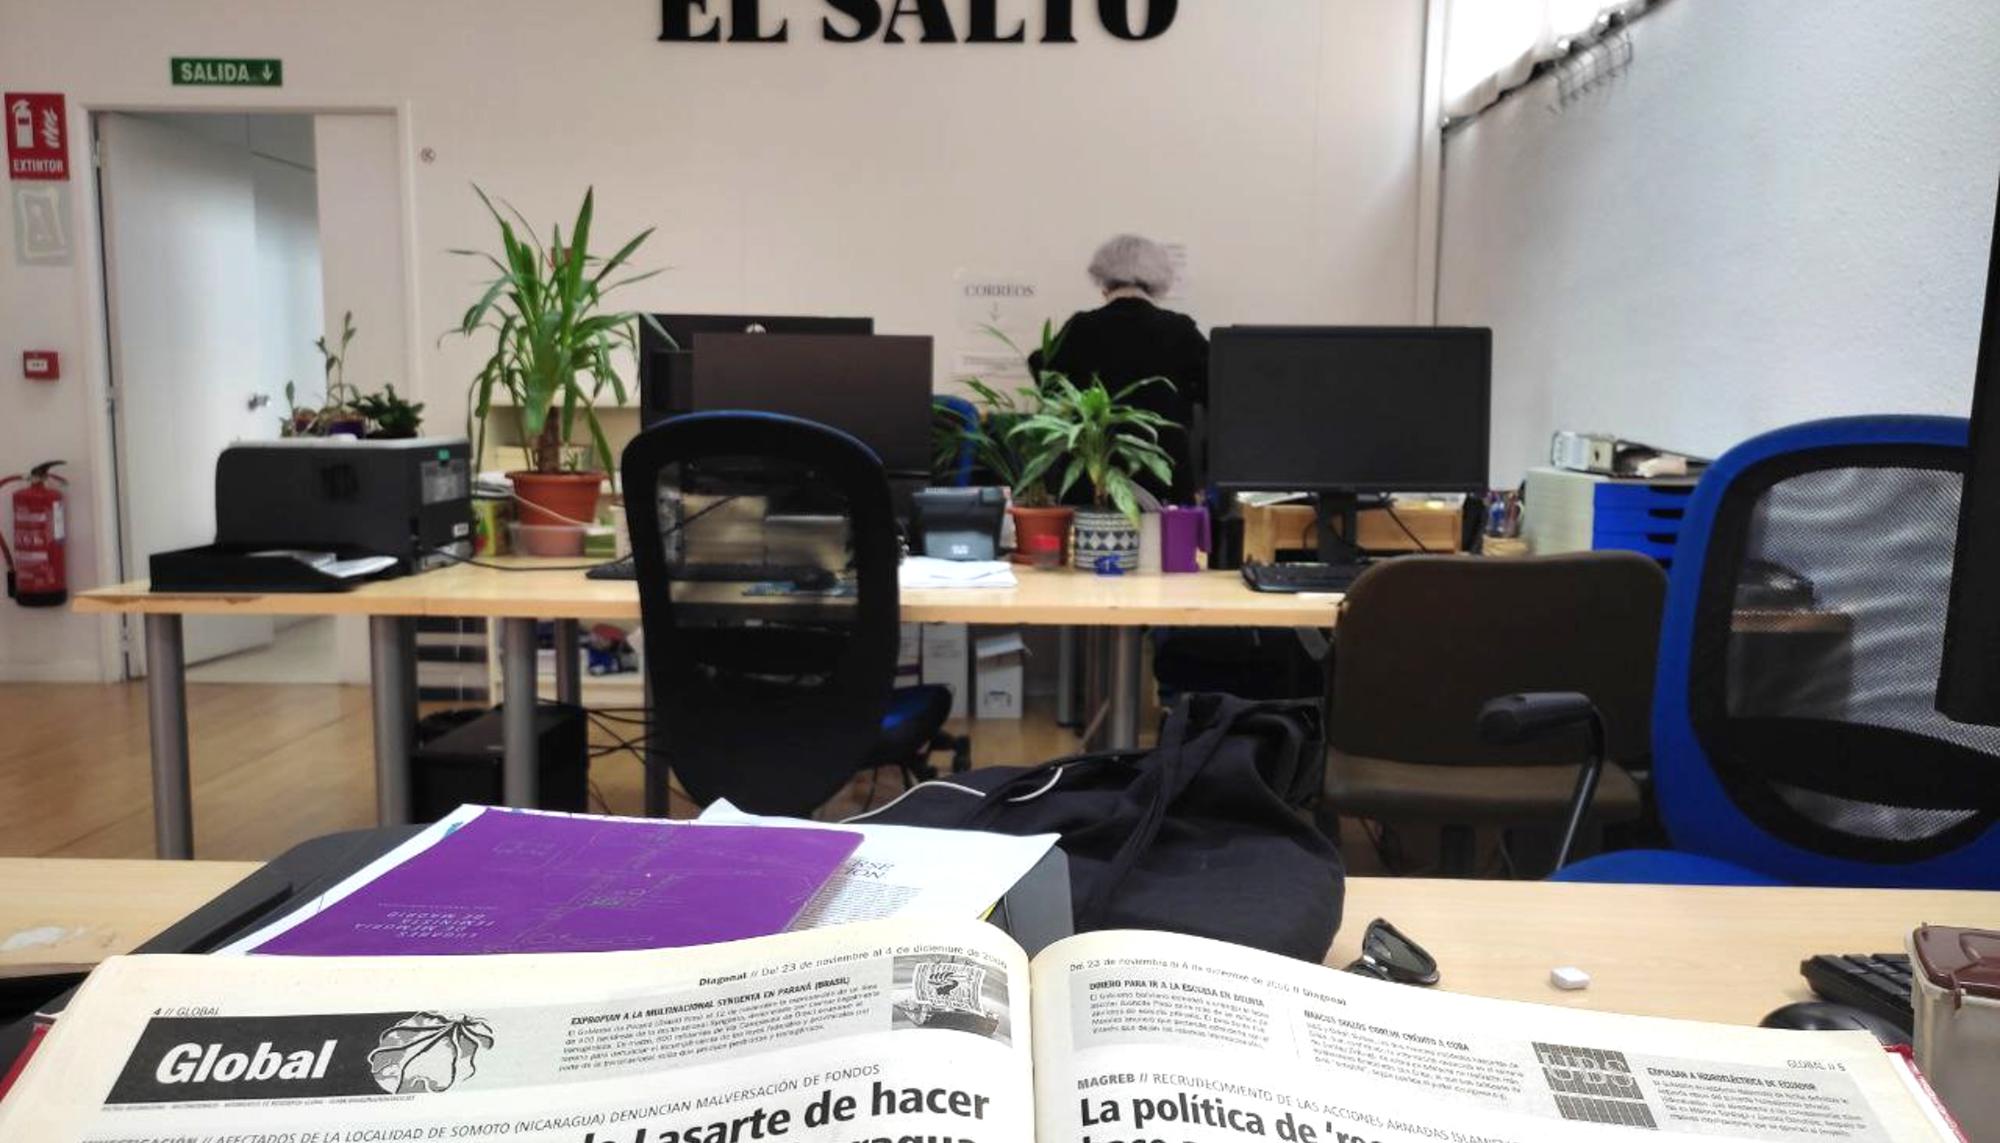 La investigación sobre Ana Urchueguia y la trama de corrupción de Lasarte-Somoto fue publicada en el número 42 de Diagonal, el 23 de noviembre de 2006. 